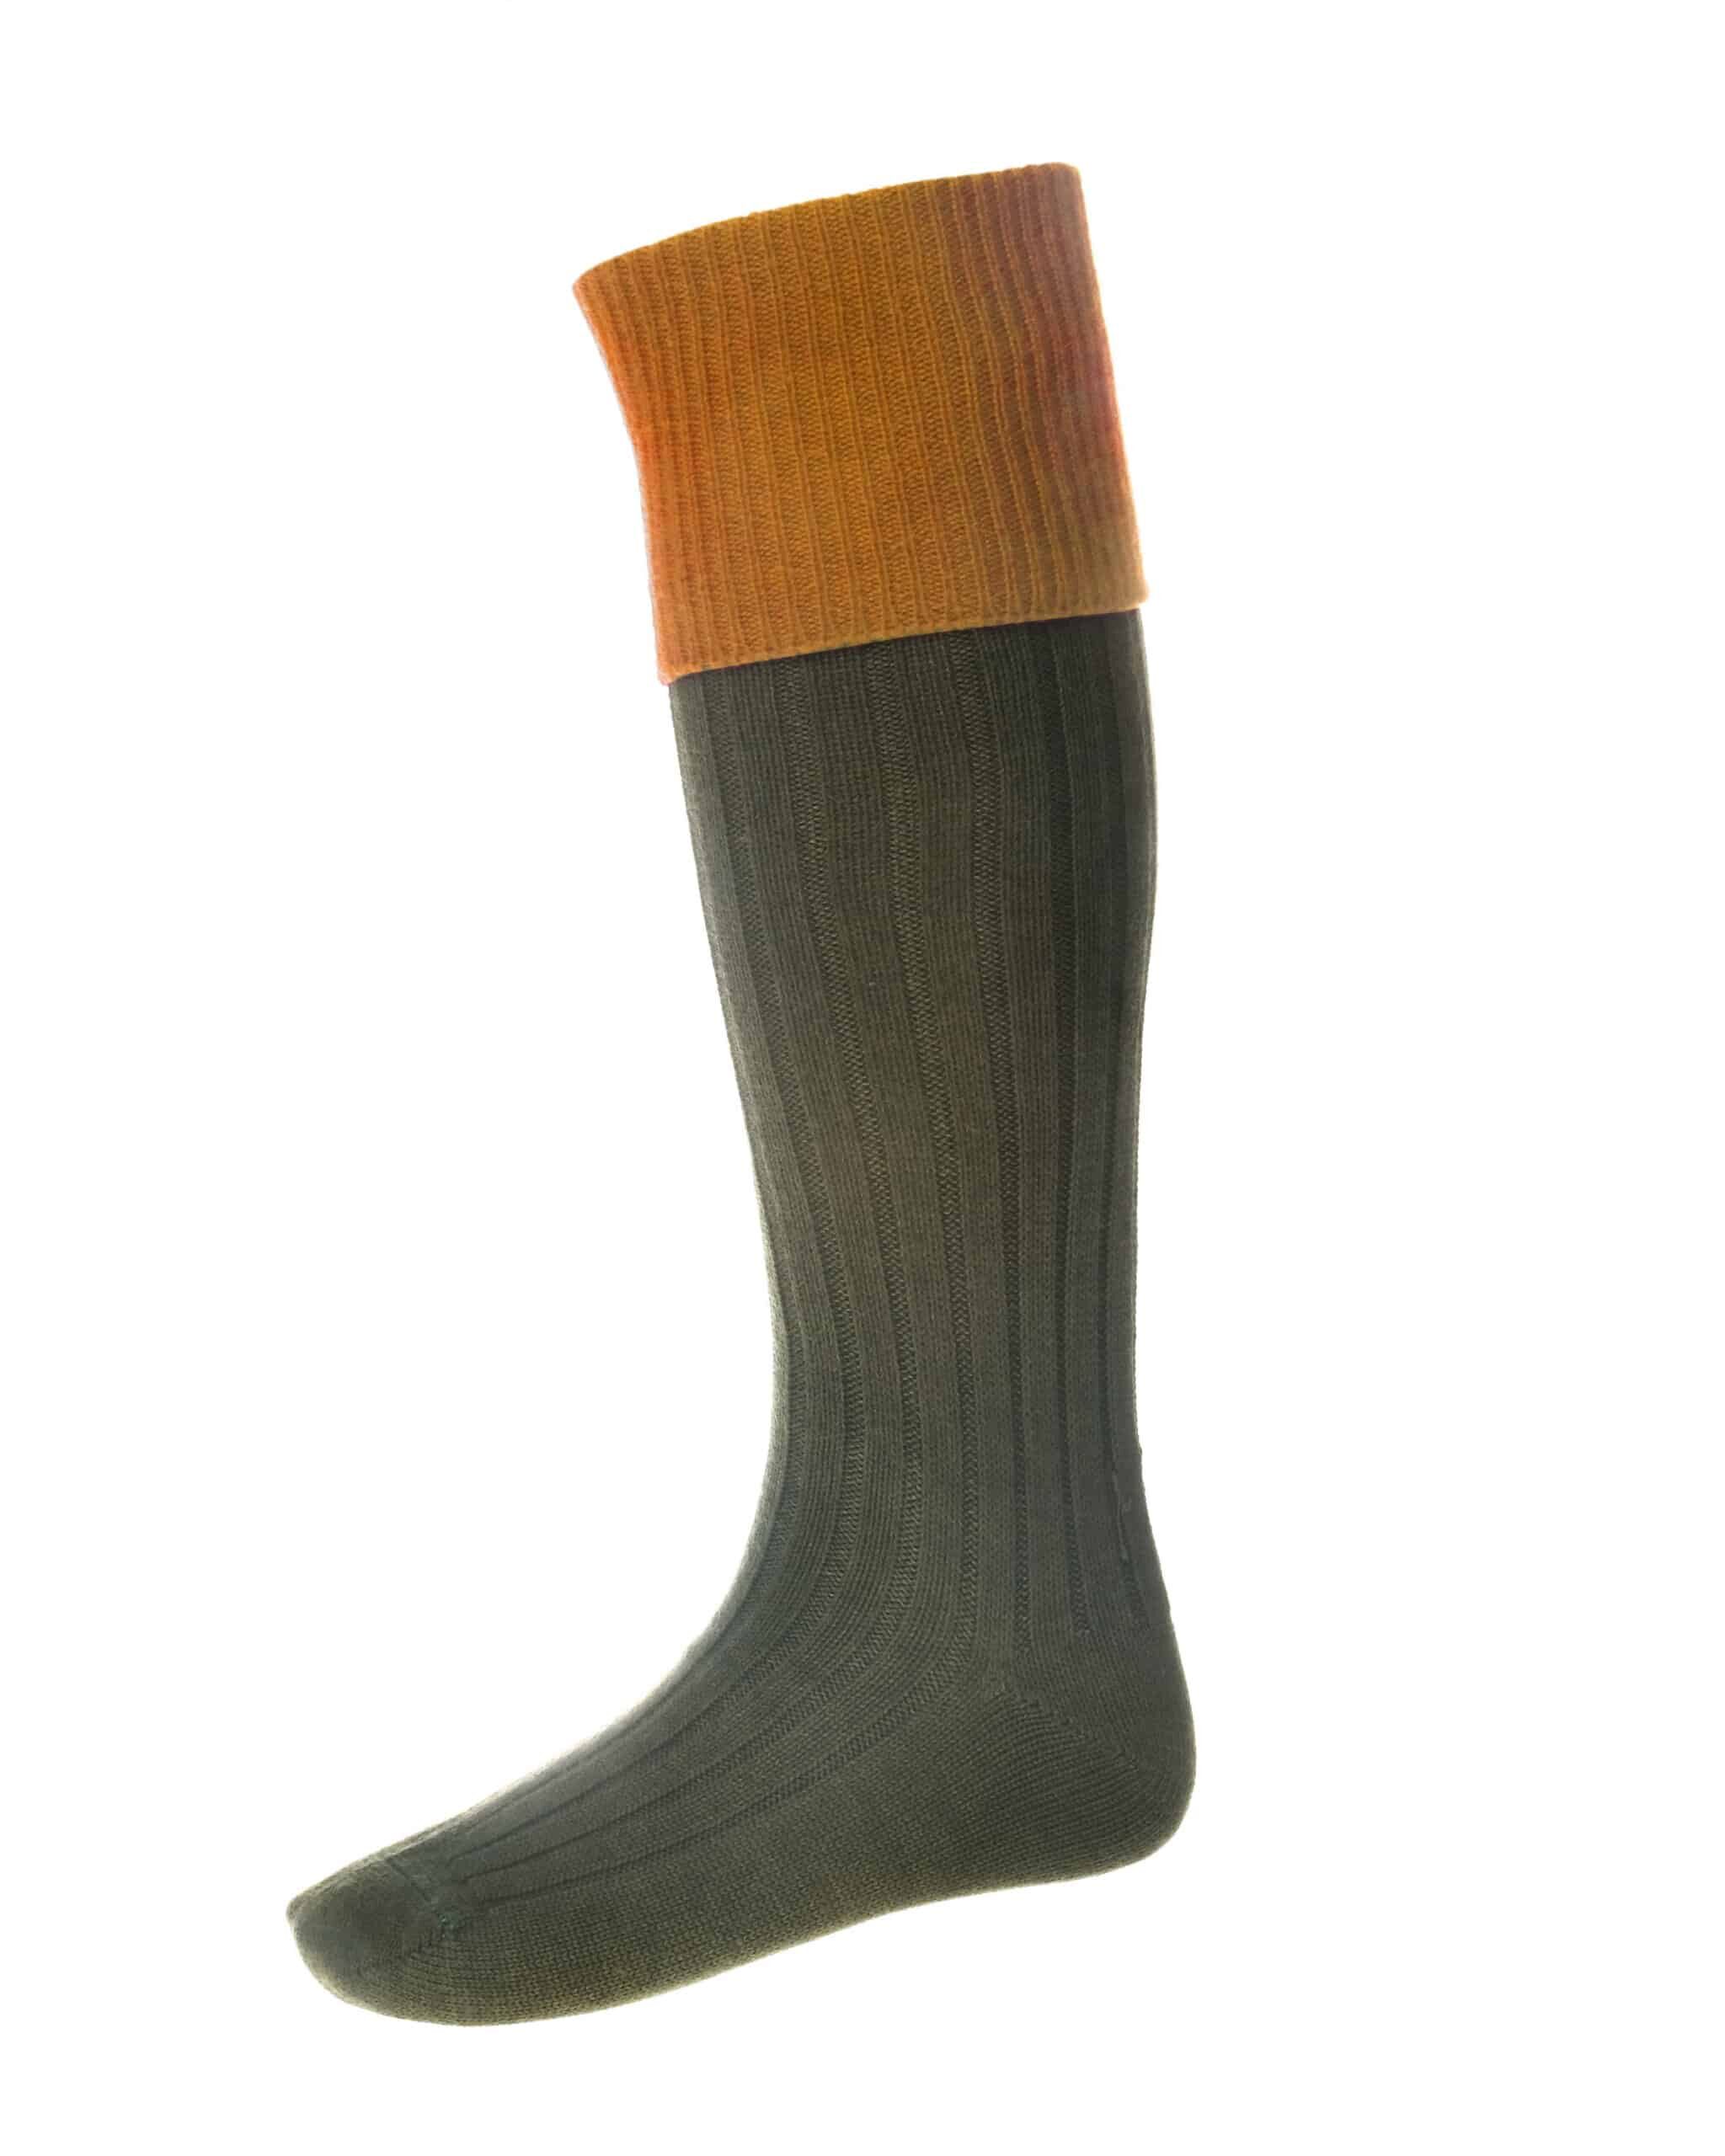 Lomond Shooting Socks Spruce/Ochre